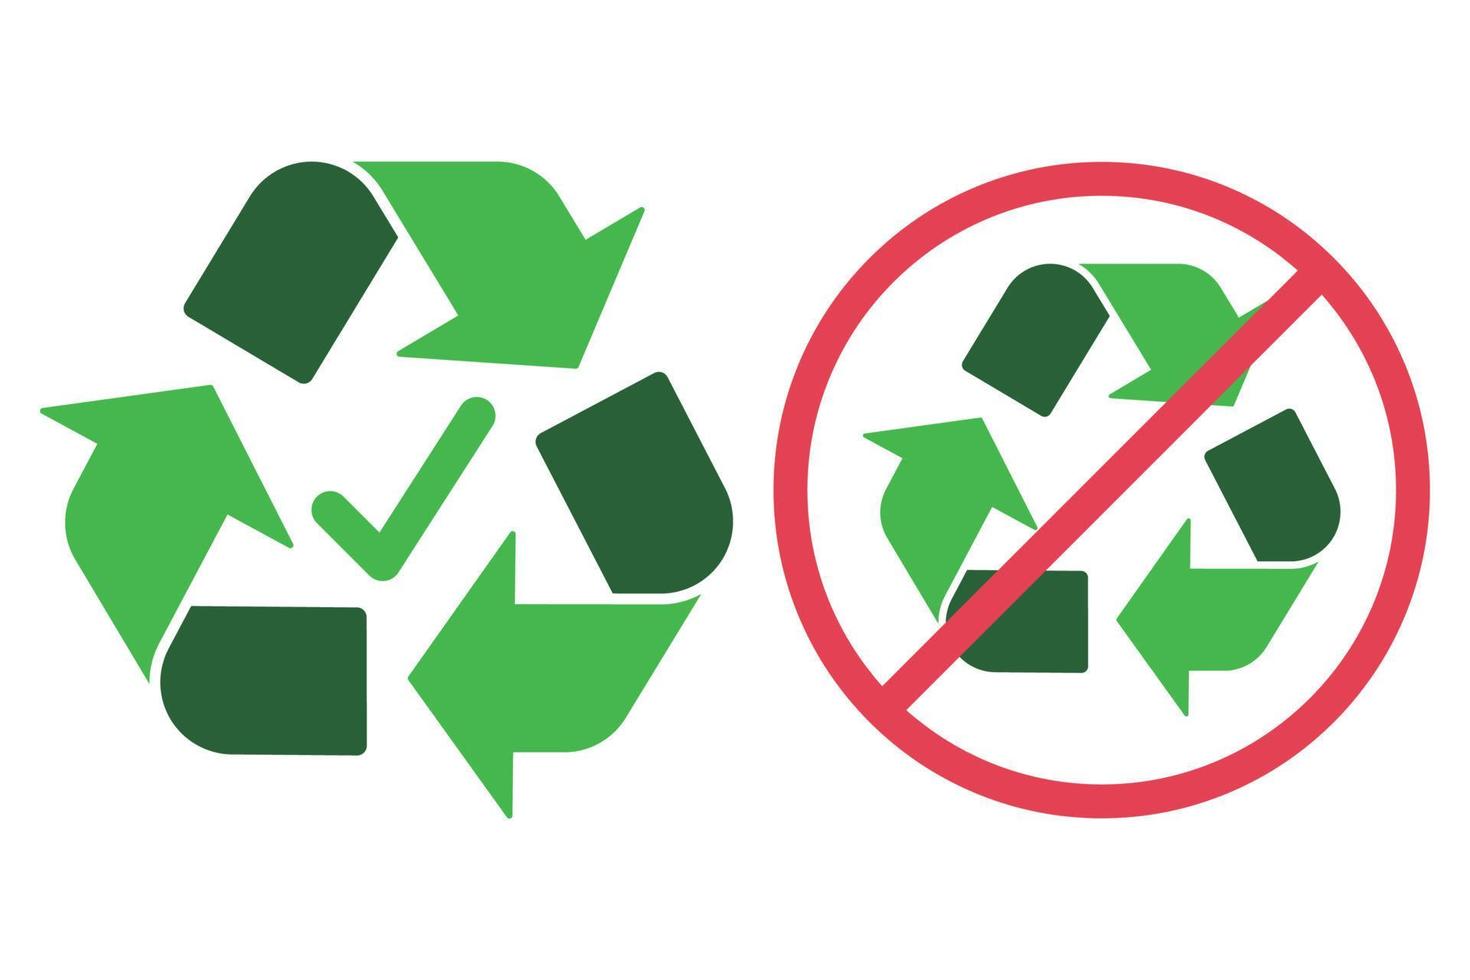 enseignes recyclables et non recyclables vecteur